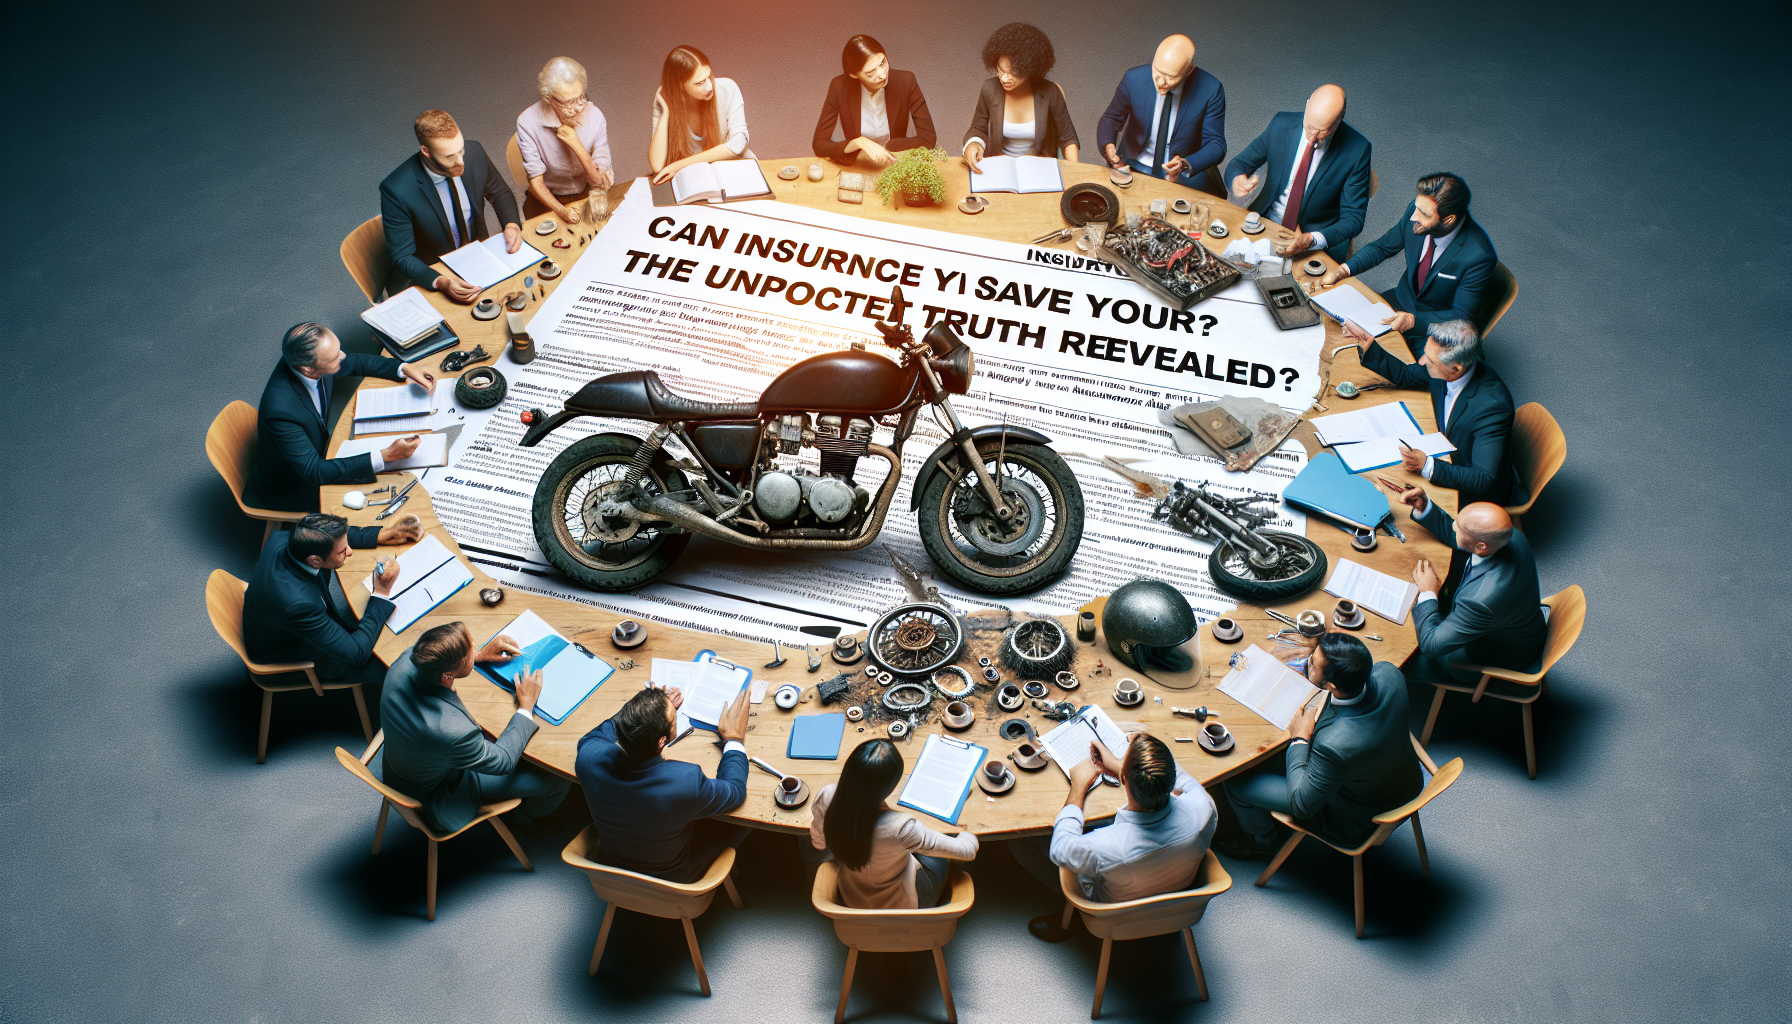 découvrez l'impact de l'assurance moto sur la révision à la réunion. conseils et informations pratiques pour optimiser l'entretien de votre moto à la réunion.